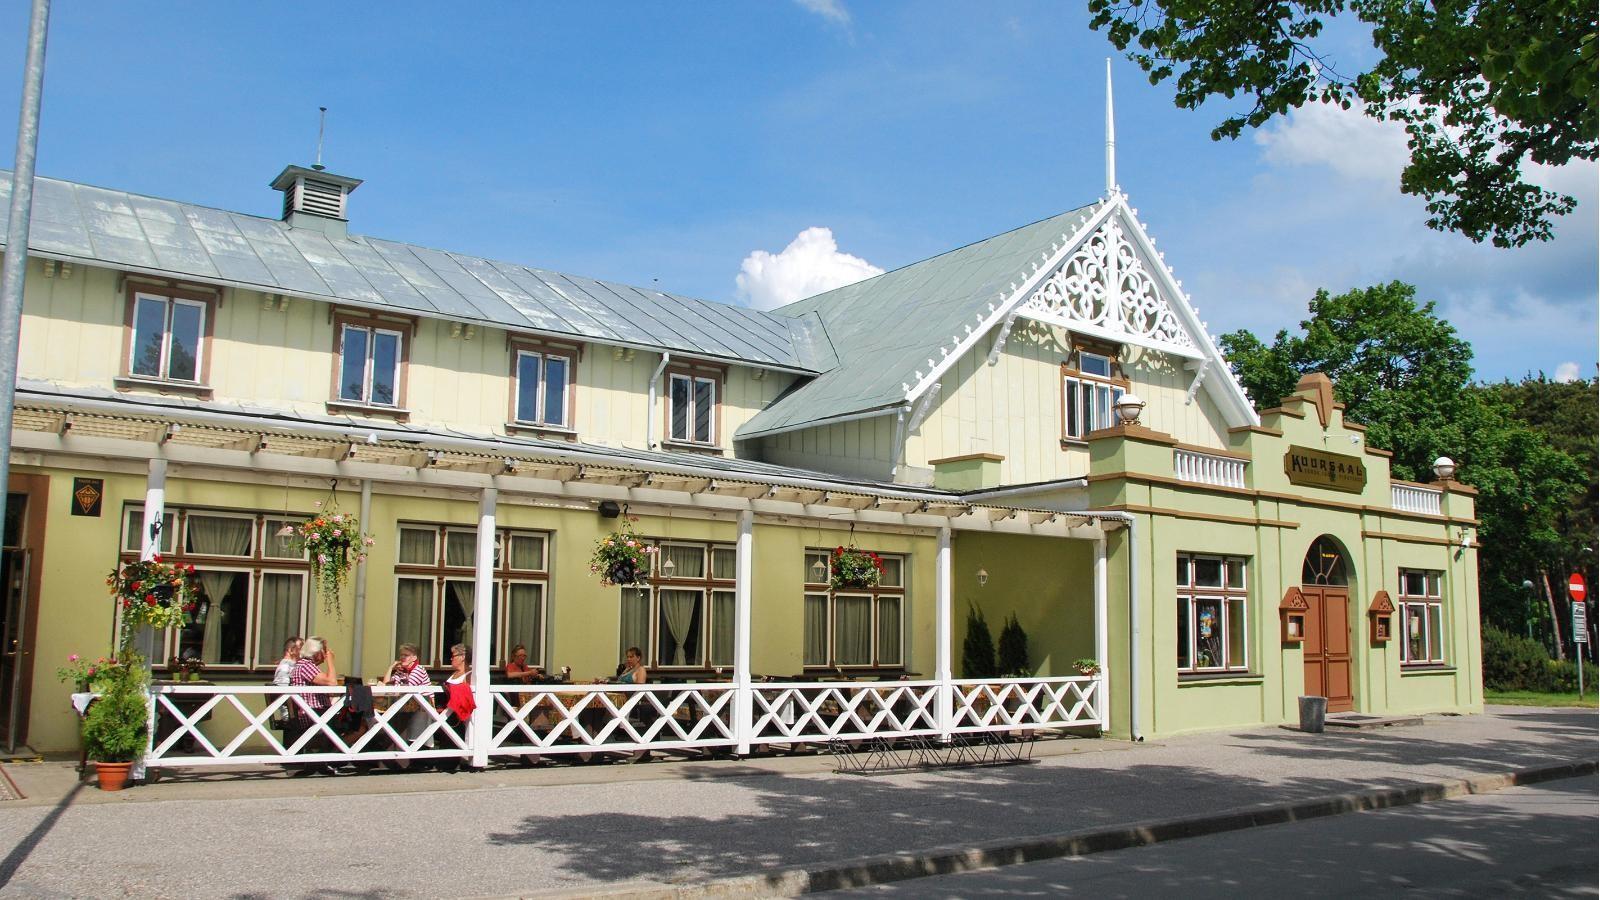 Pärnu Kuursaal